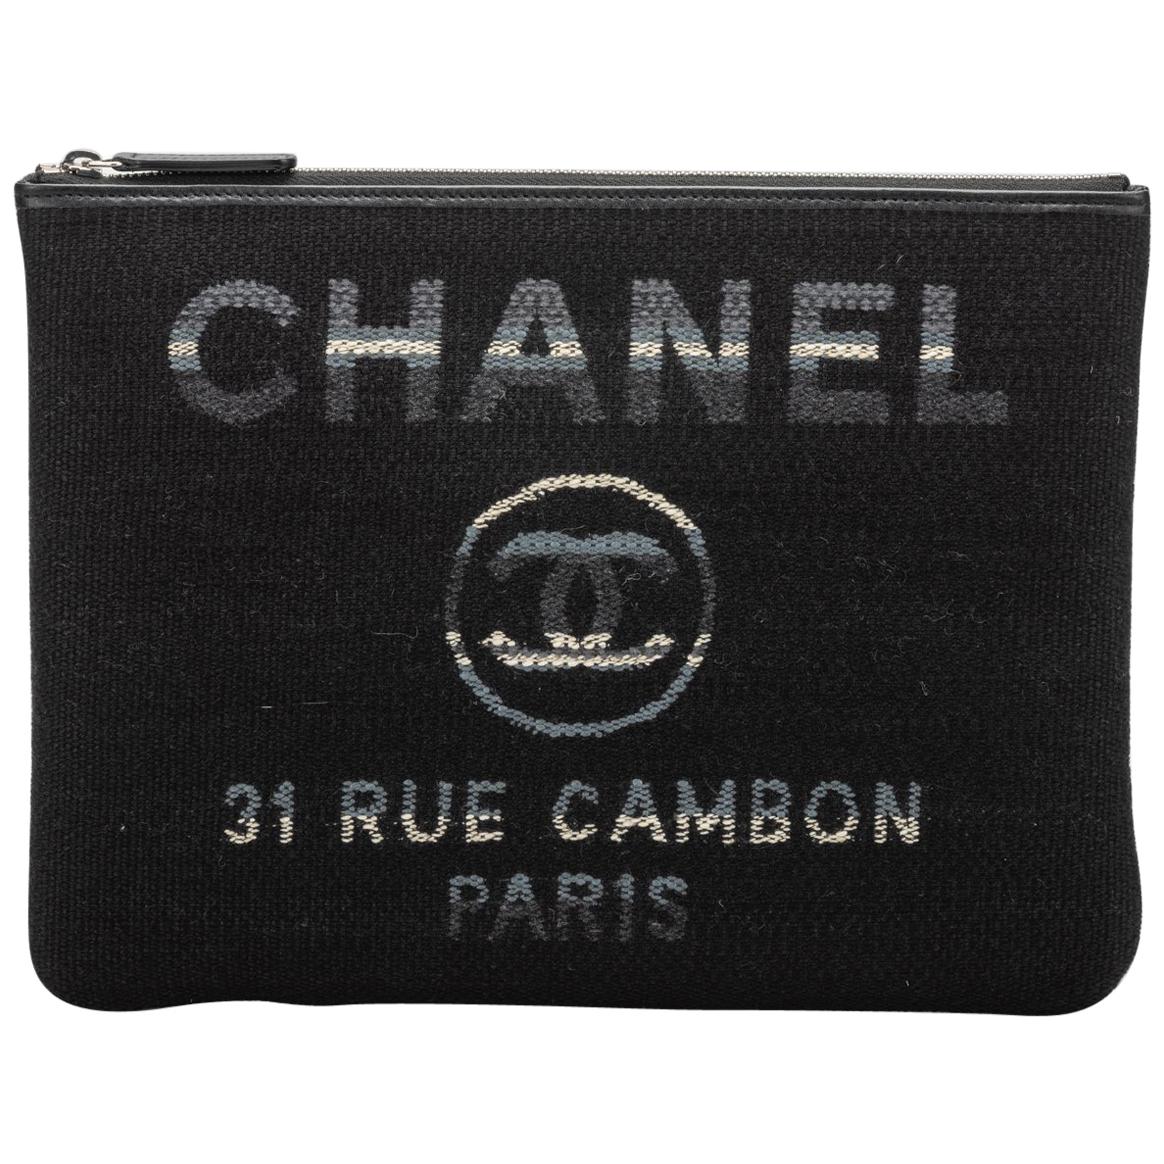 New in Box, Chanel Medium Black Striped Clutch Bag